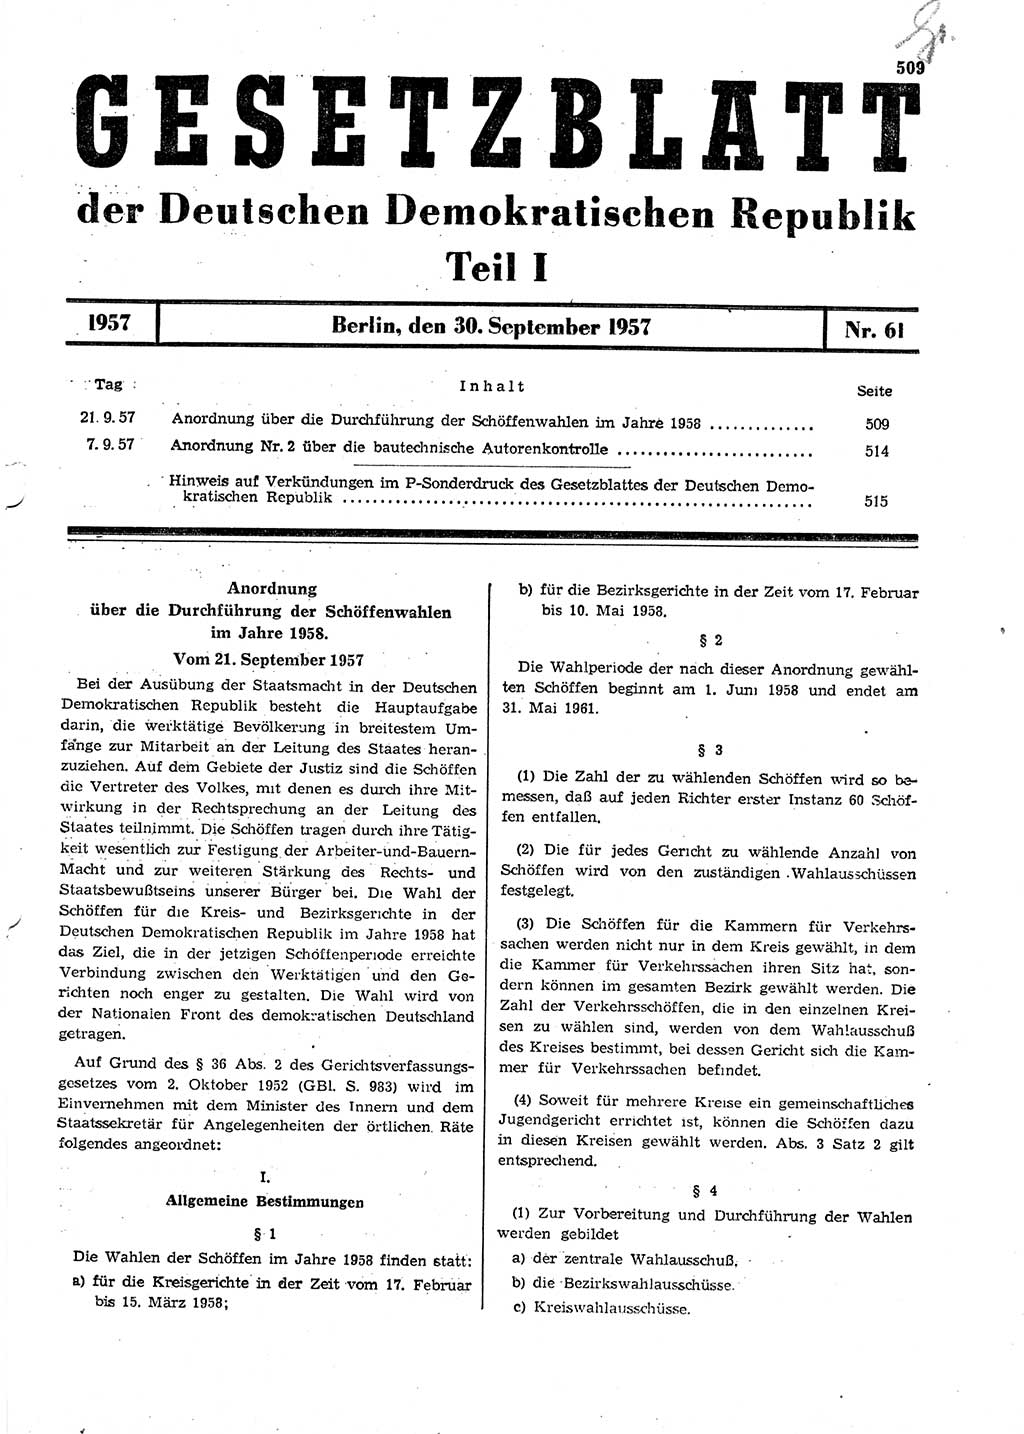 Gesetzblatt (GBl.) der Deutschen Demokratischen Republik (DDR) Teil Ⅰ 1957, Seite 509 (GBl. DDR Ⅰ 1957, S. 509)